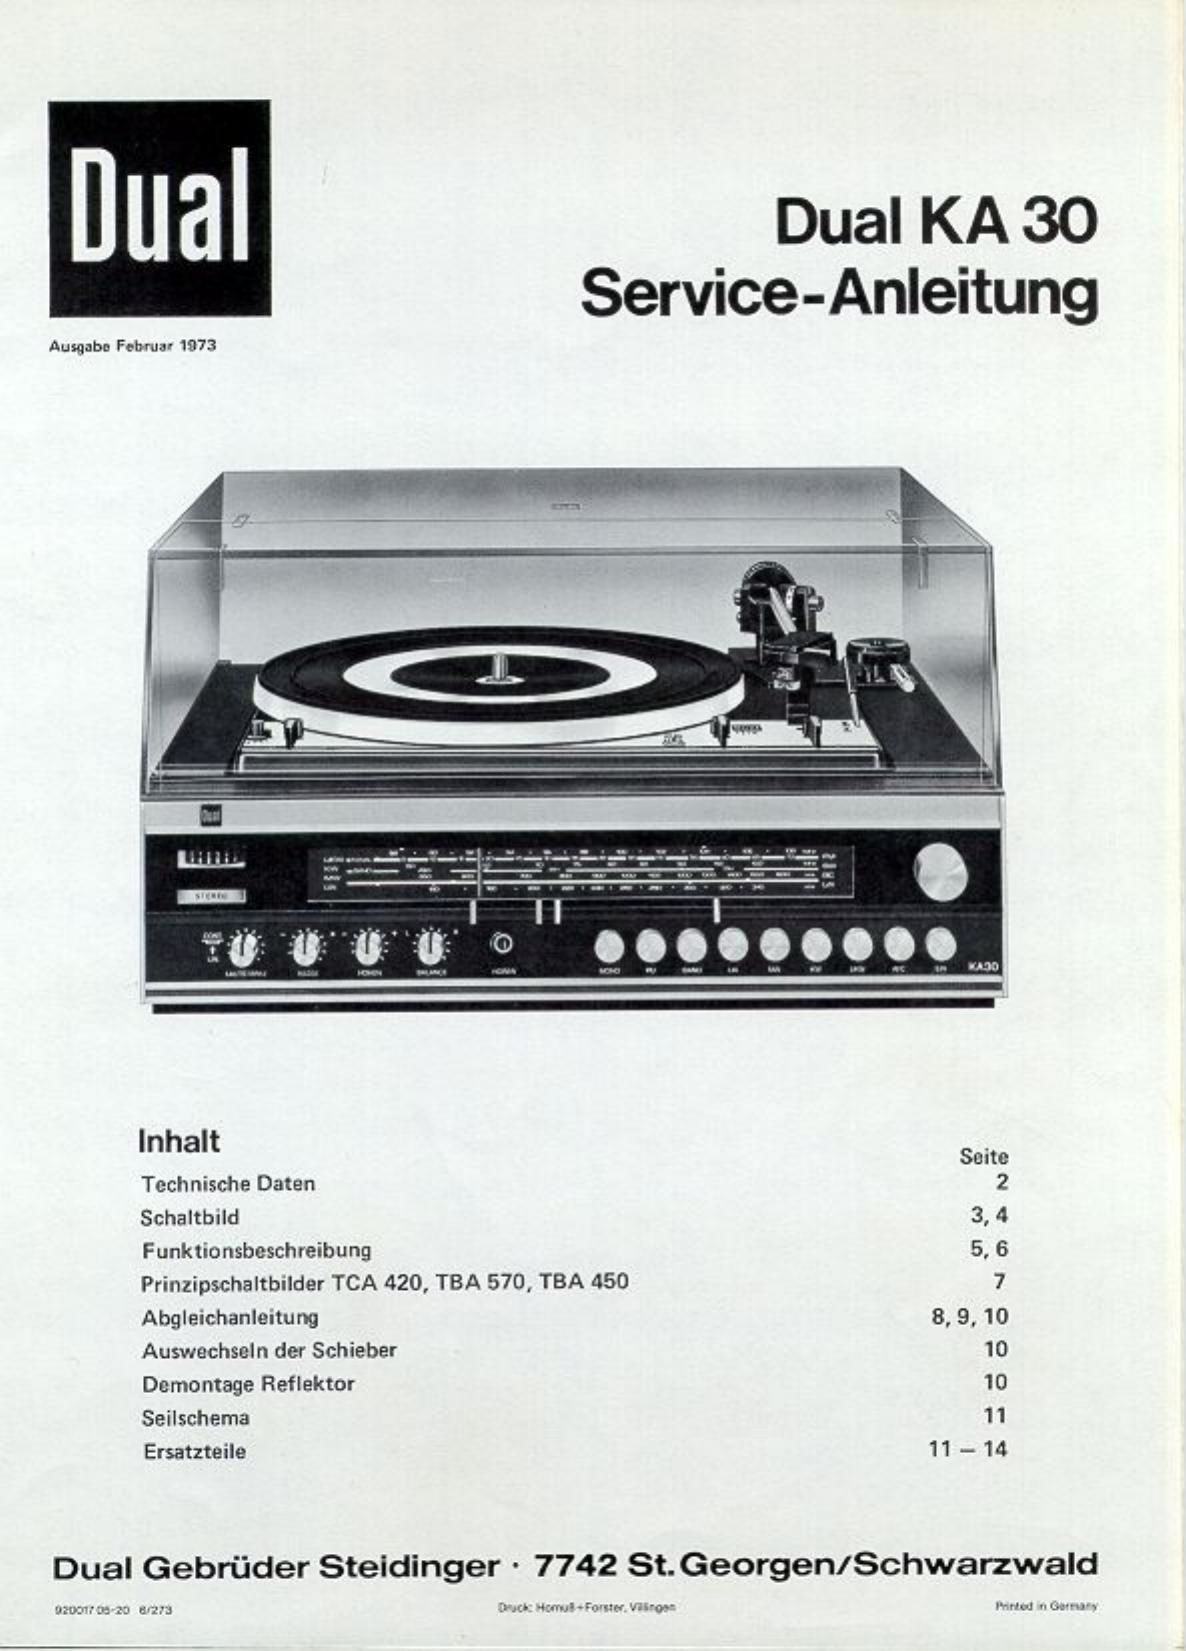 Dual KA 30 Service Manual